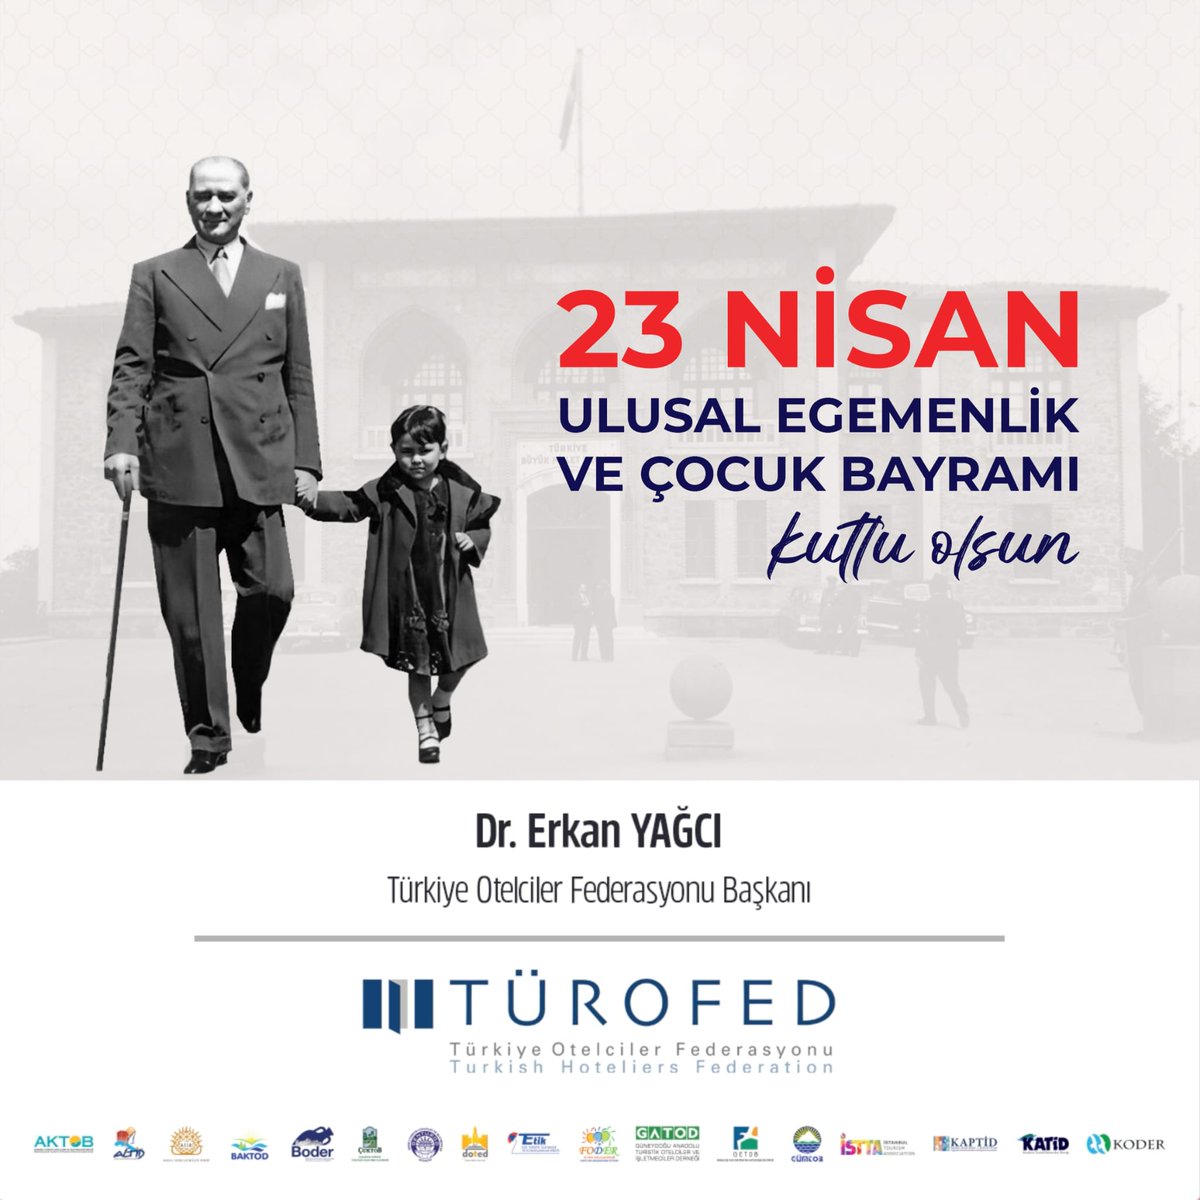 23 Nisan Ulusal Egemenlik ve Çocuk Bayramı Kutlu Olsun 🎈 Çocuklarımızın sevgi ve barış içinde büyümelerini diliyor; bağımsızlık ve egemenlik mücadelesinin simgesi olan TBMM açılışının 104. yılında bu gururu yaşatan Atatürk ve silah arkadaşlarını rahmetle anıyoruz 🇹🇷 #23Nisan